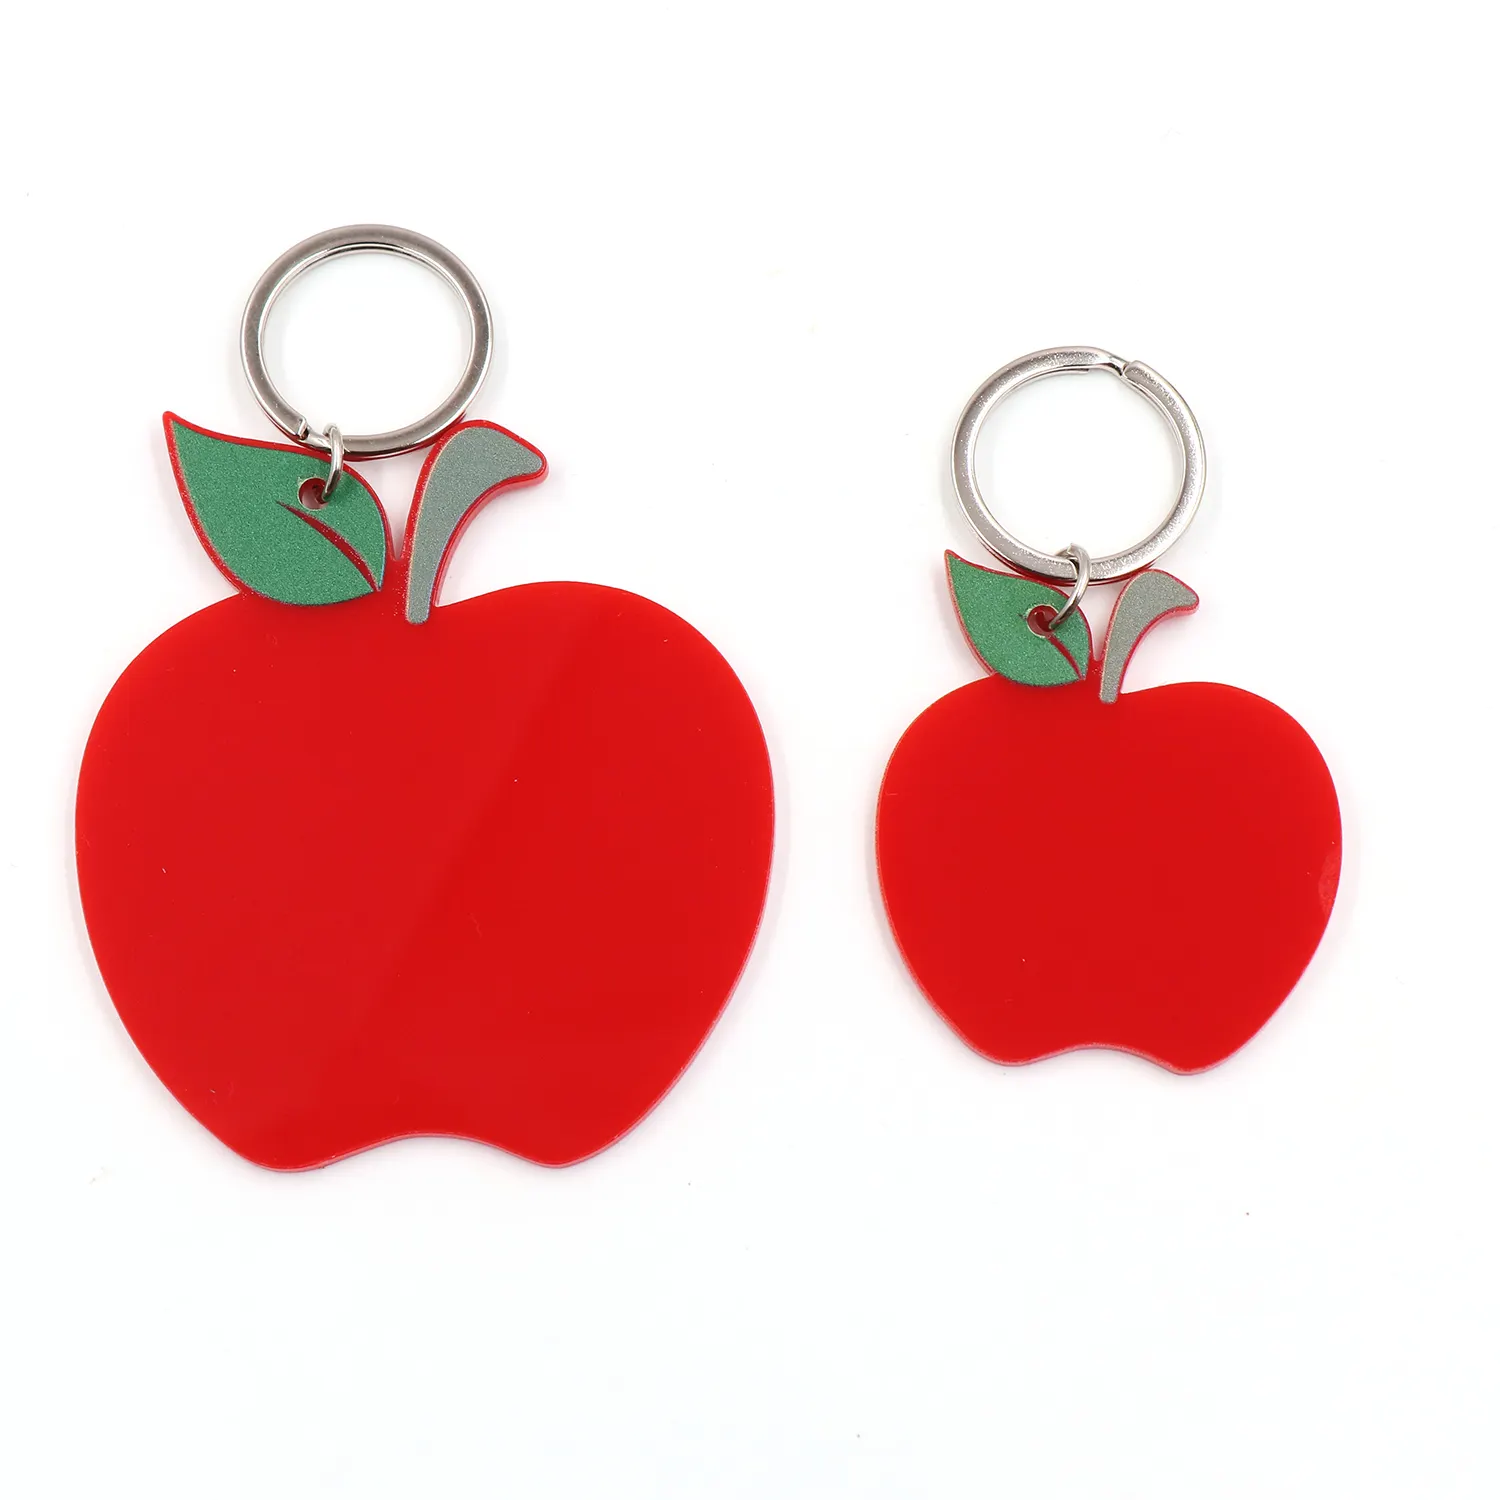 & Nbsp; 2 polegadas (50mm) chaveiro acrílico de presente de apreciação do professor, presente para estudante, apple vermelho